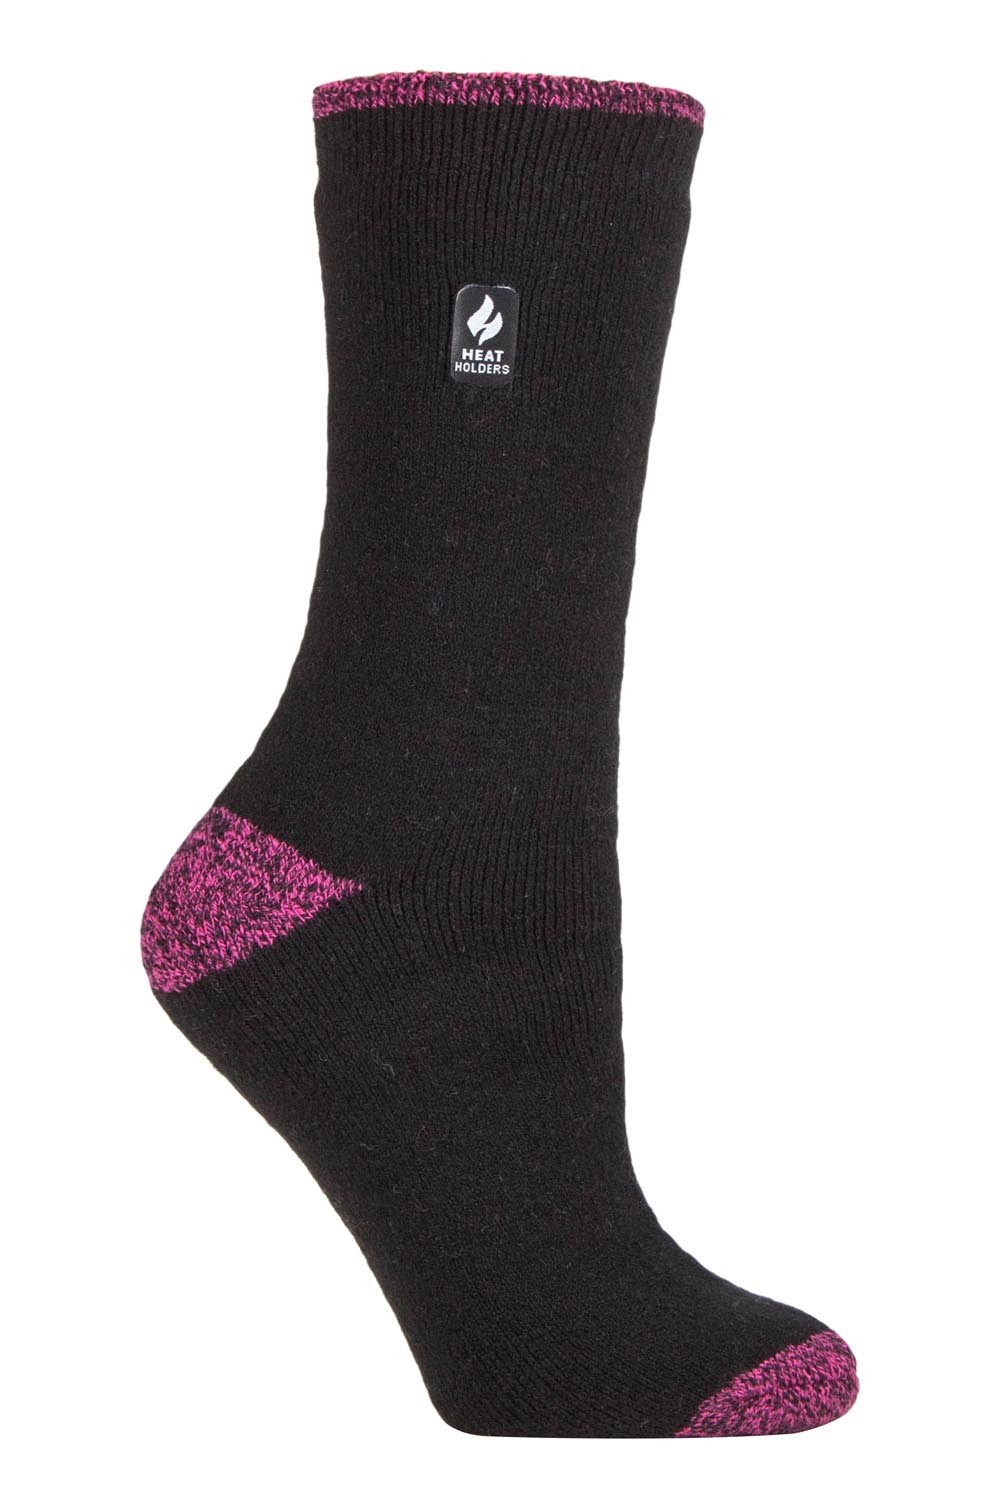 Heat Holders Thermal Socks - Ladies, Black - Complete Care Shop